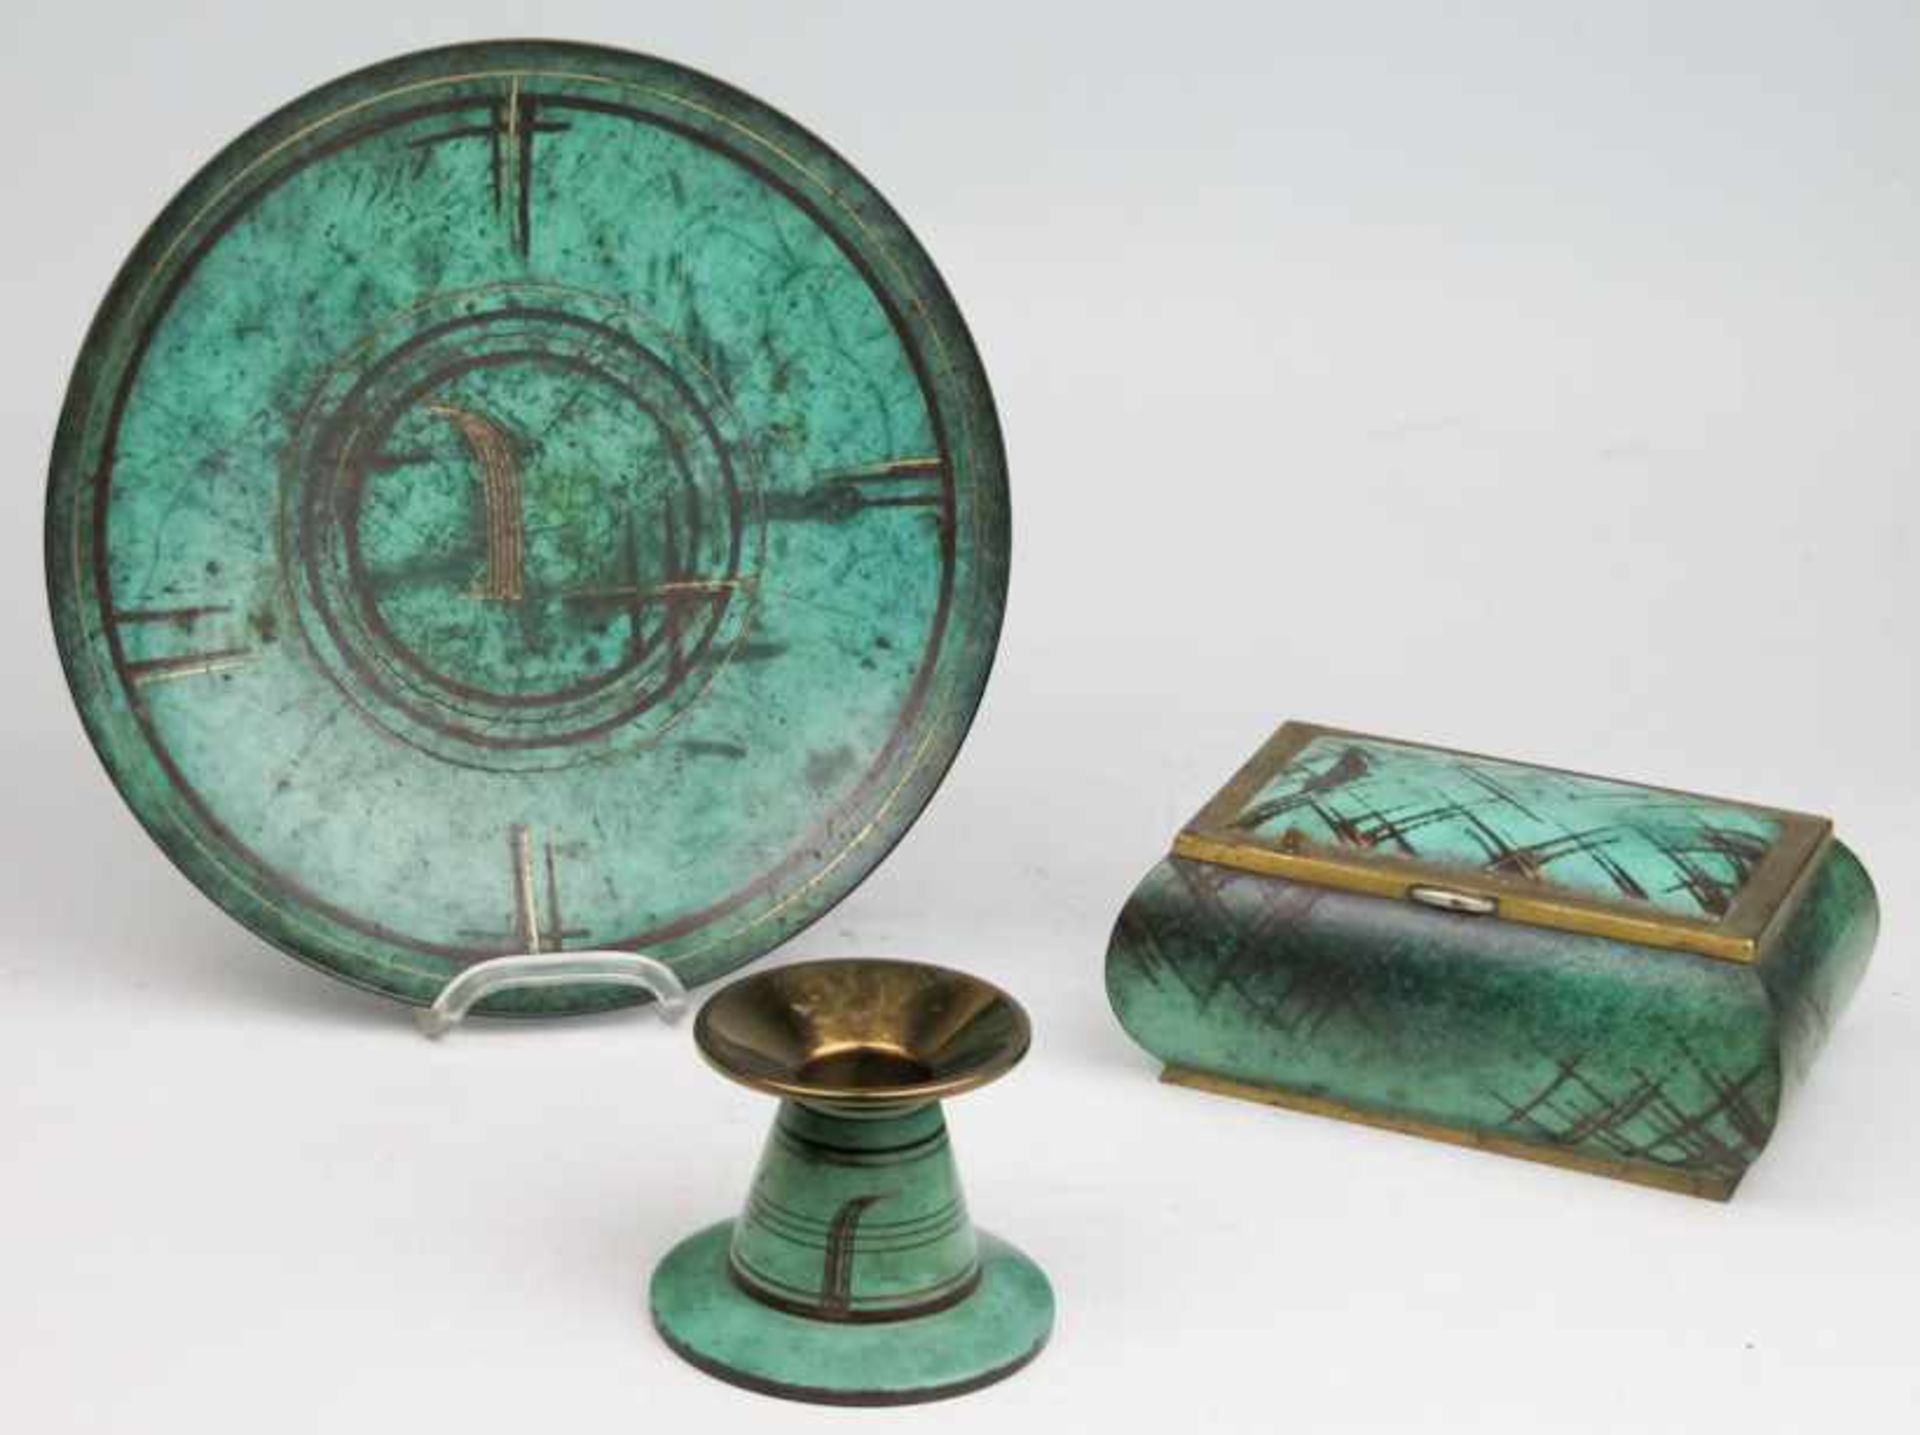 WMF-Ikora-Teller und kleiner TischleuchterMessing, grün patiniert. Art-Deco-Liniendekor. D. 22